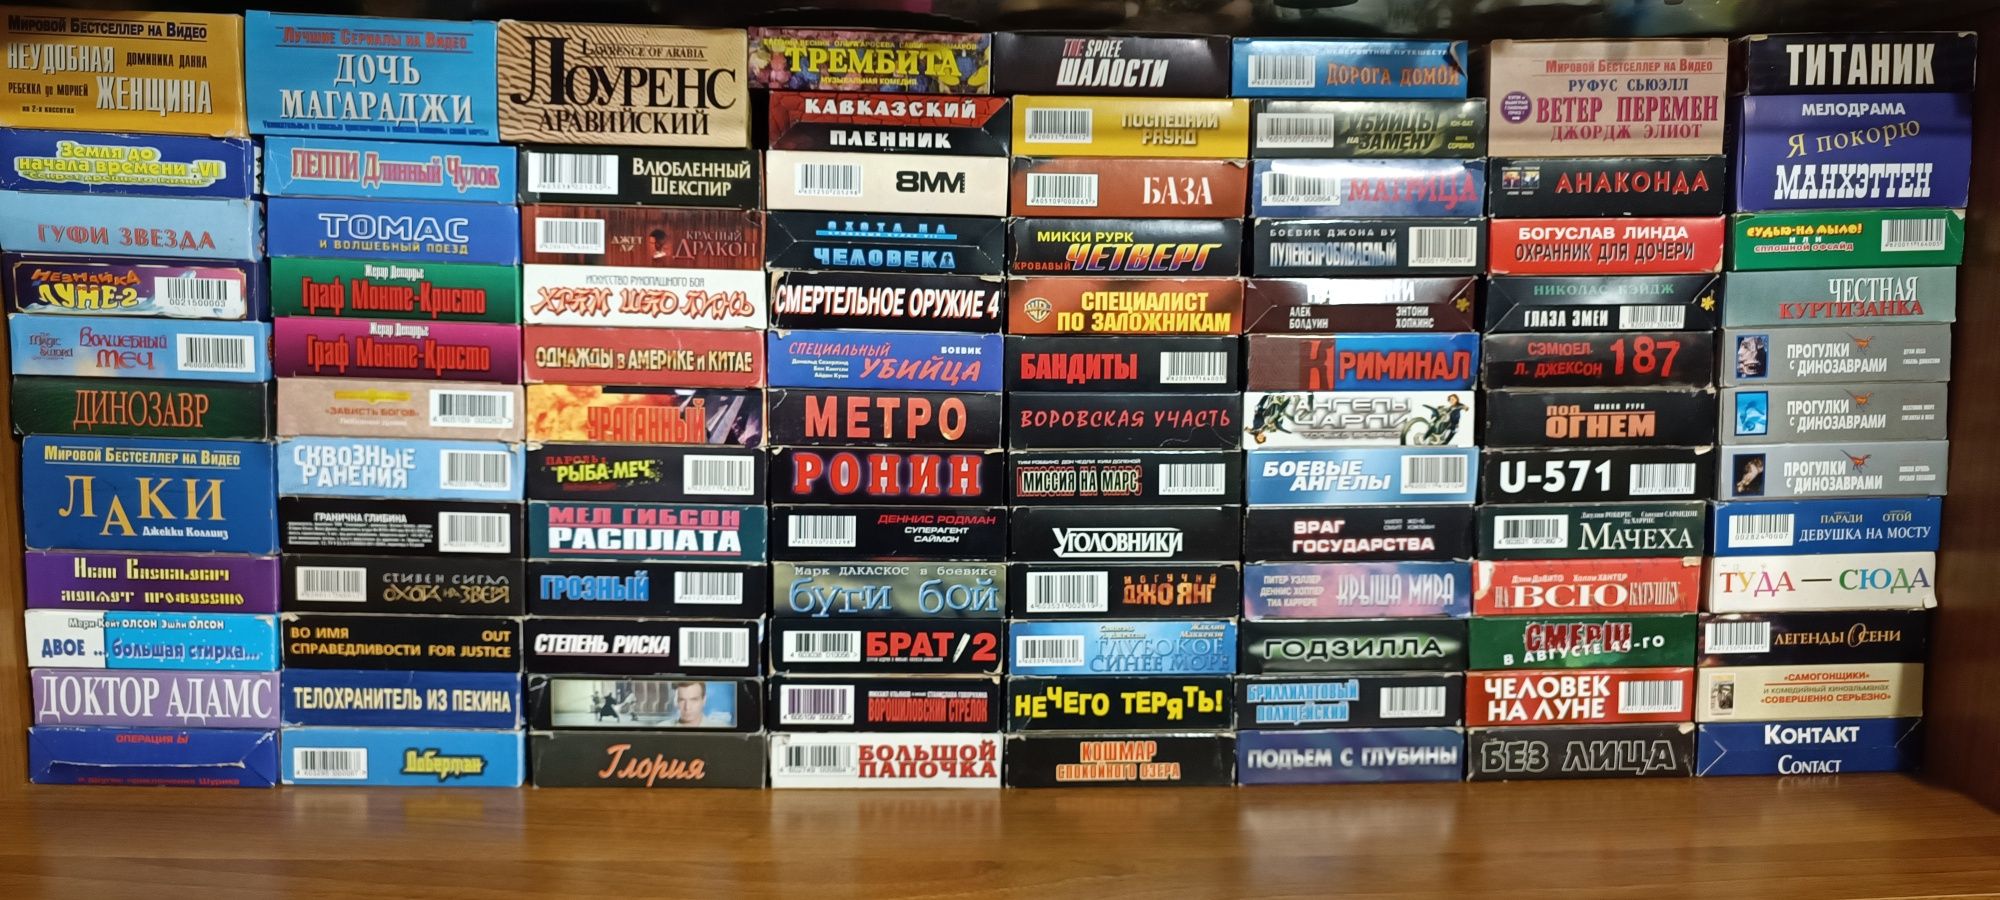 Лицензированные кассеты